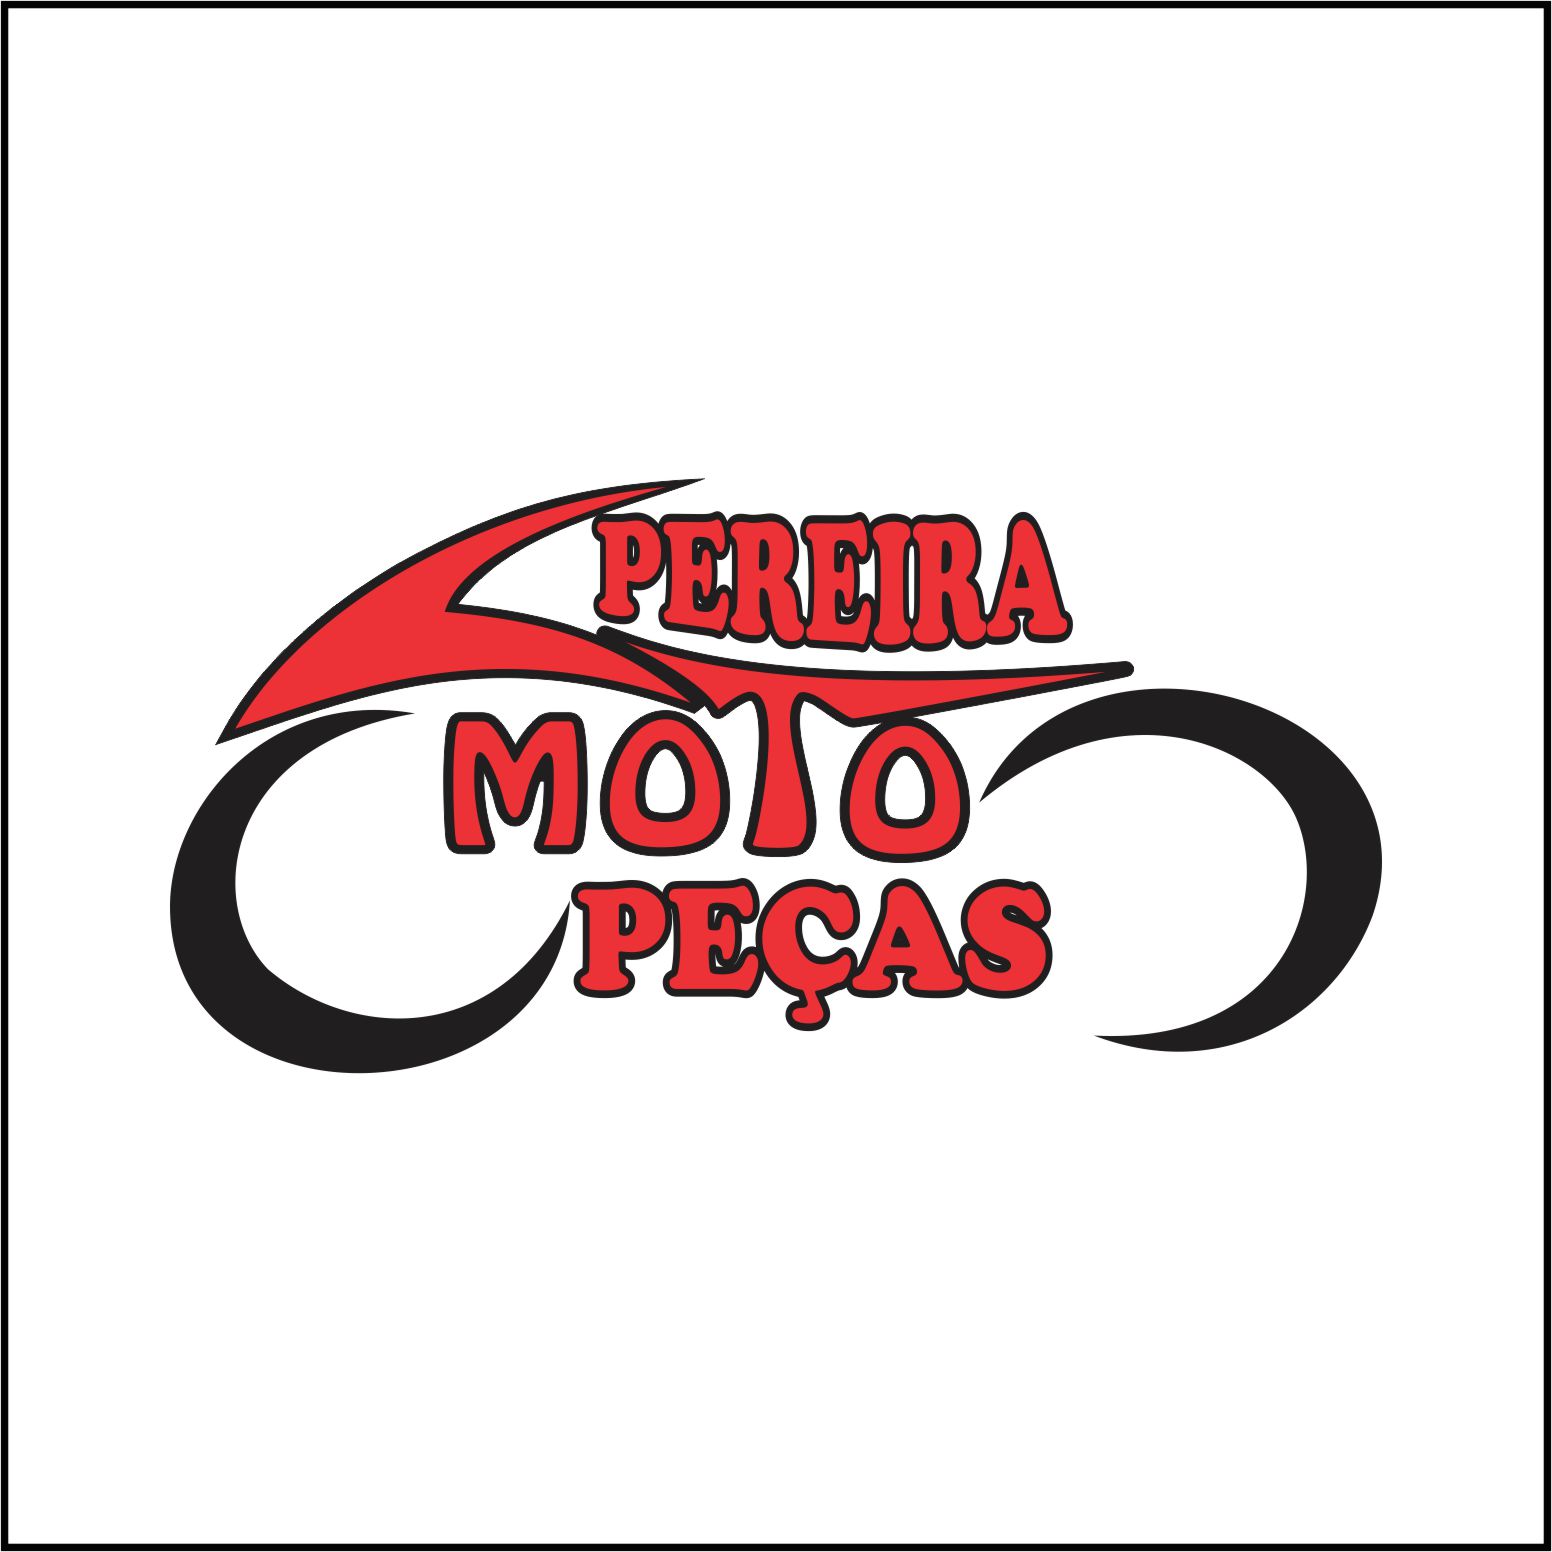 Pereira Moto peças